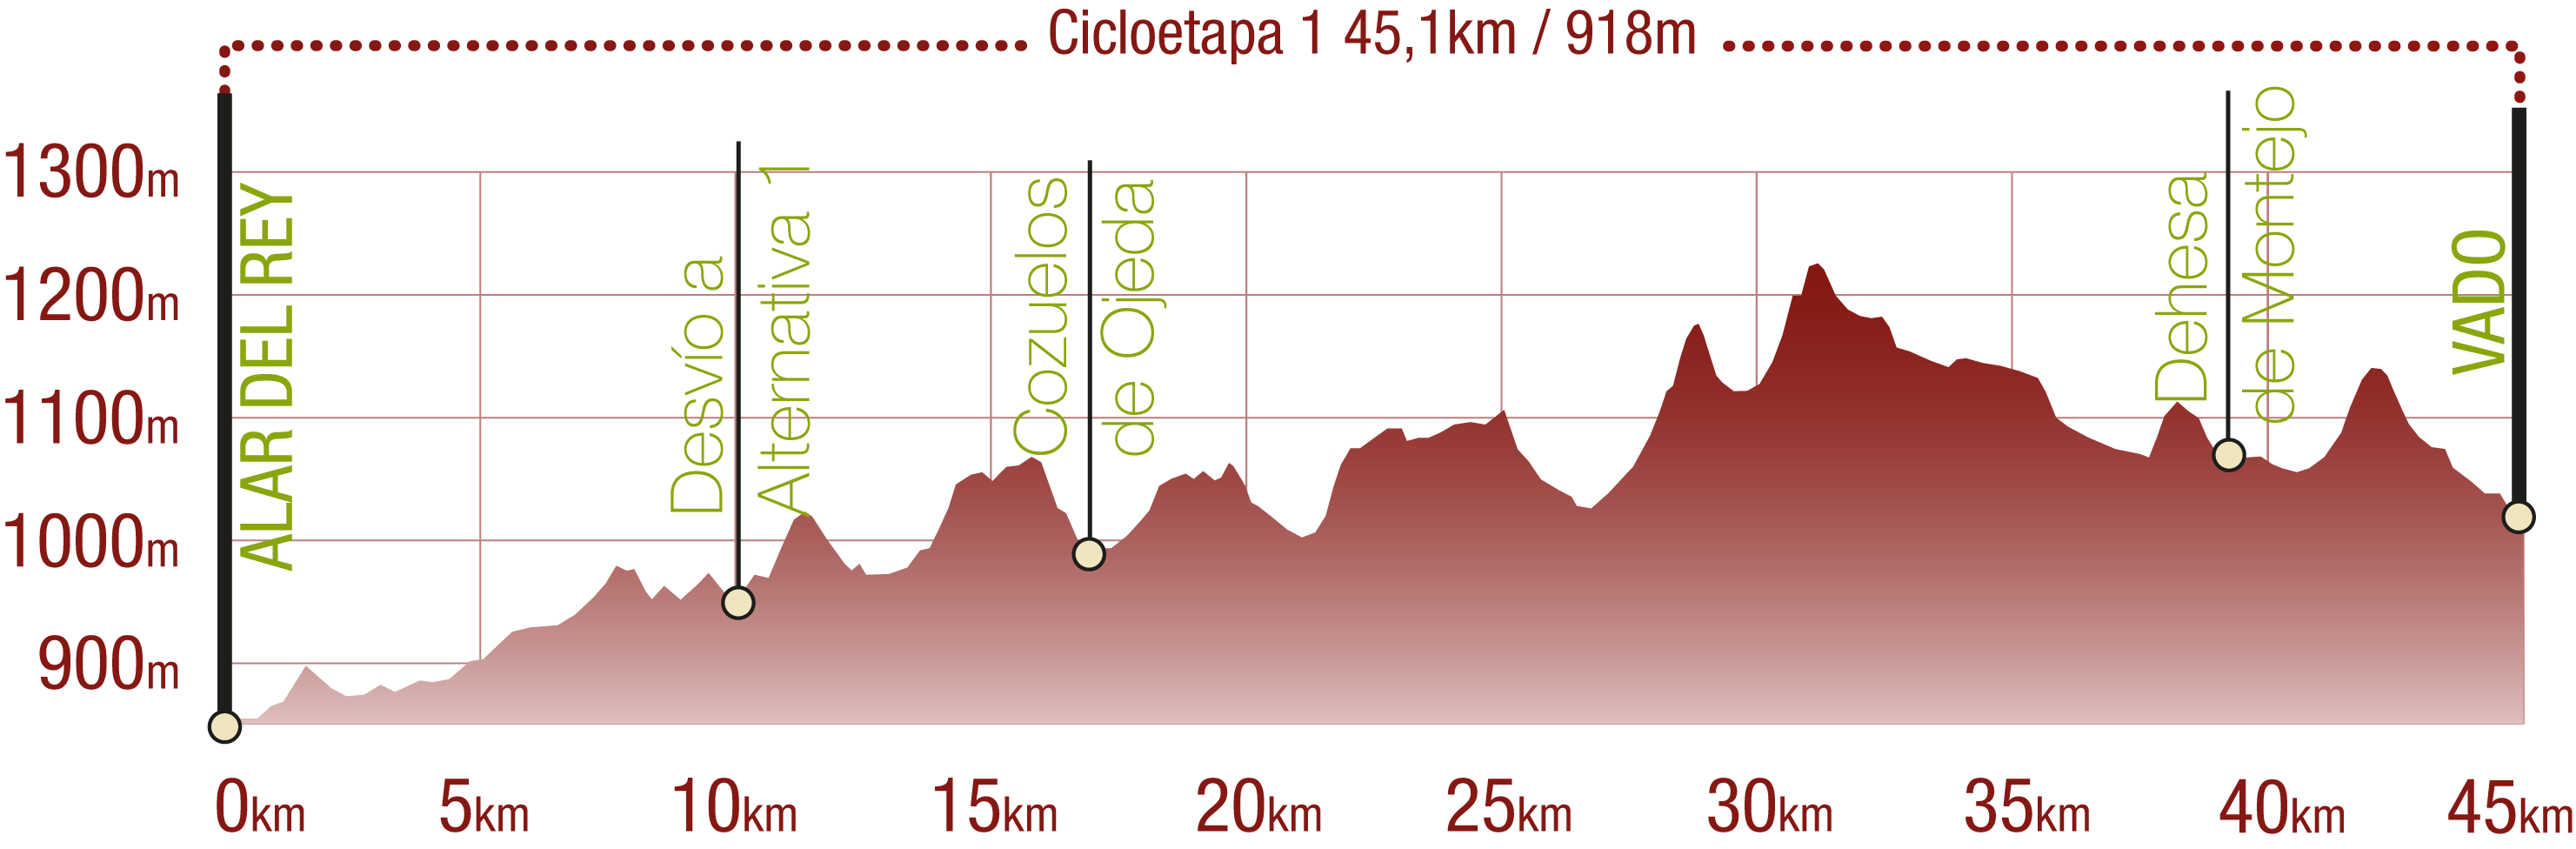 Perfil 
Perfil de la Cicloetapa 1 del CN del Románico Palentino: 45,1 km / Desnivel de subida 918 m

